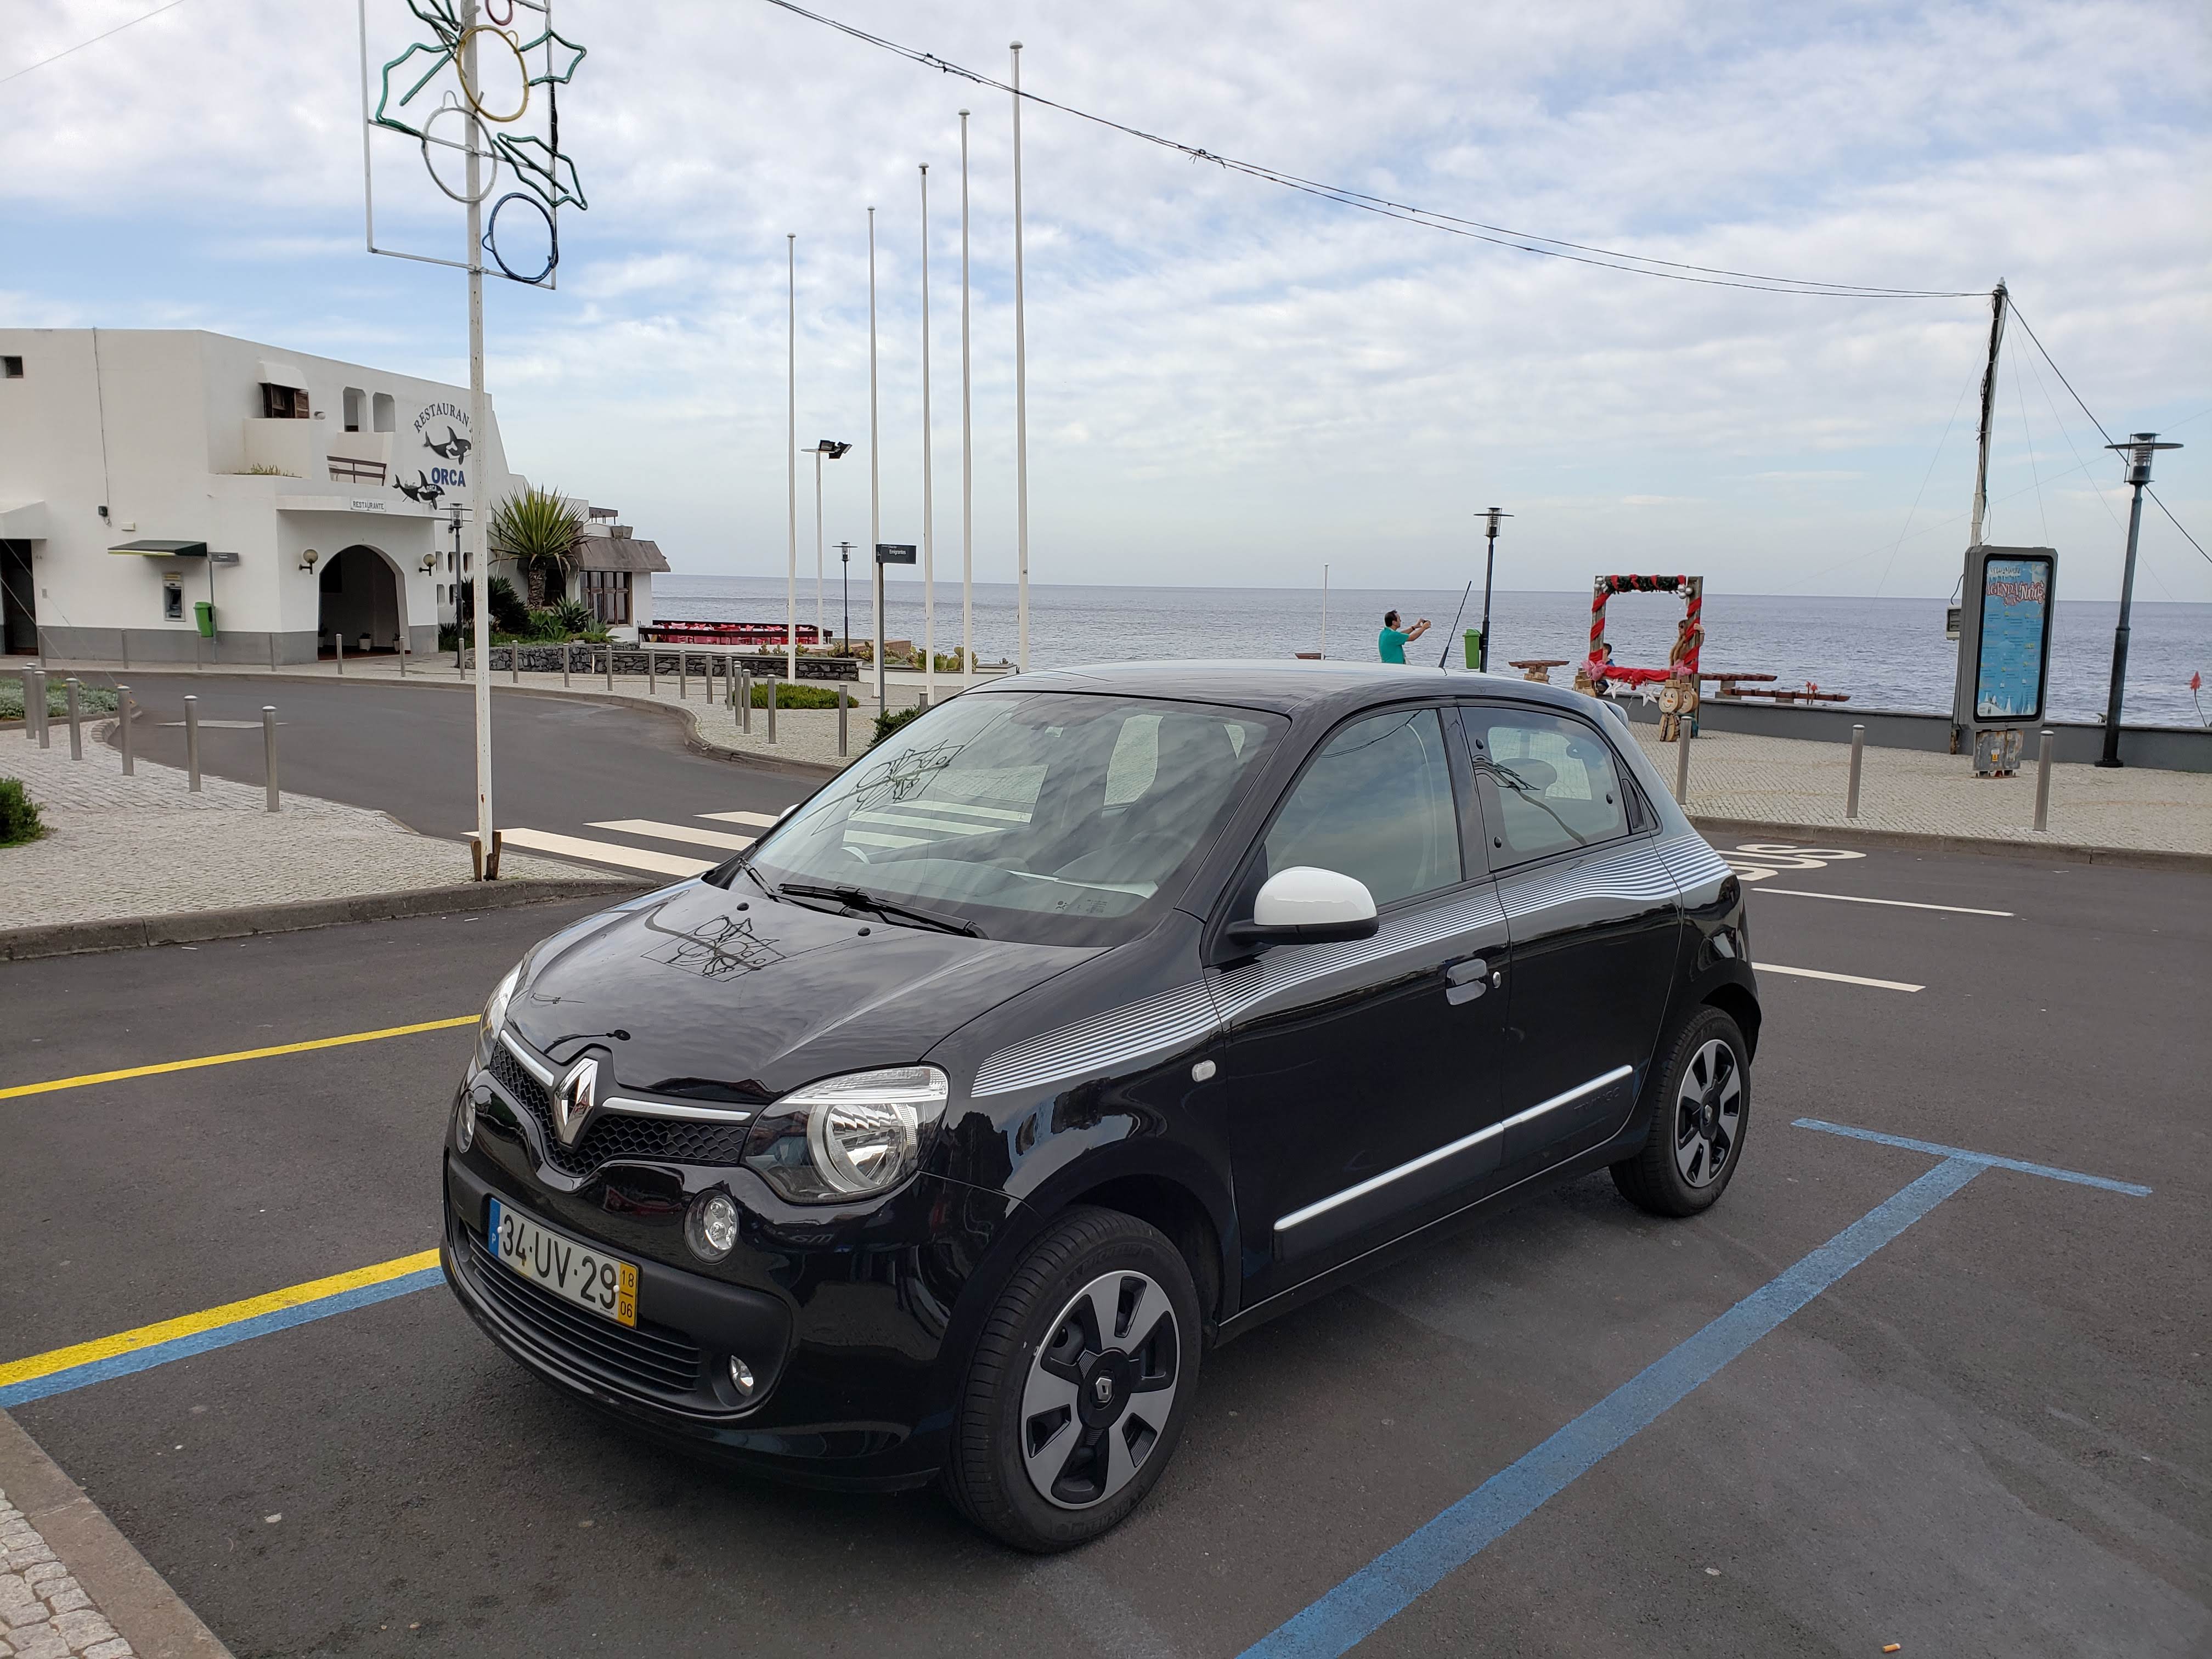 Renault Twingo 3 : retour aux sources - Challenges